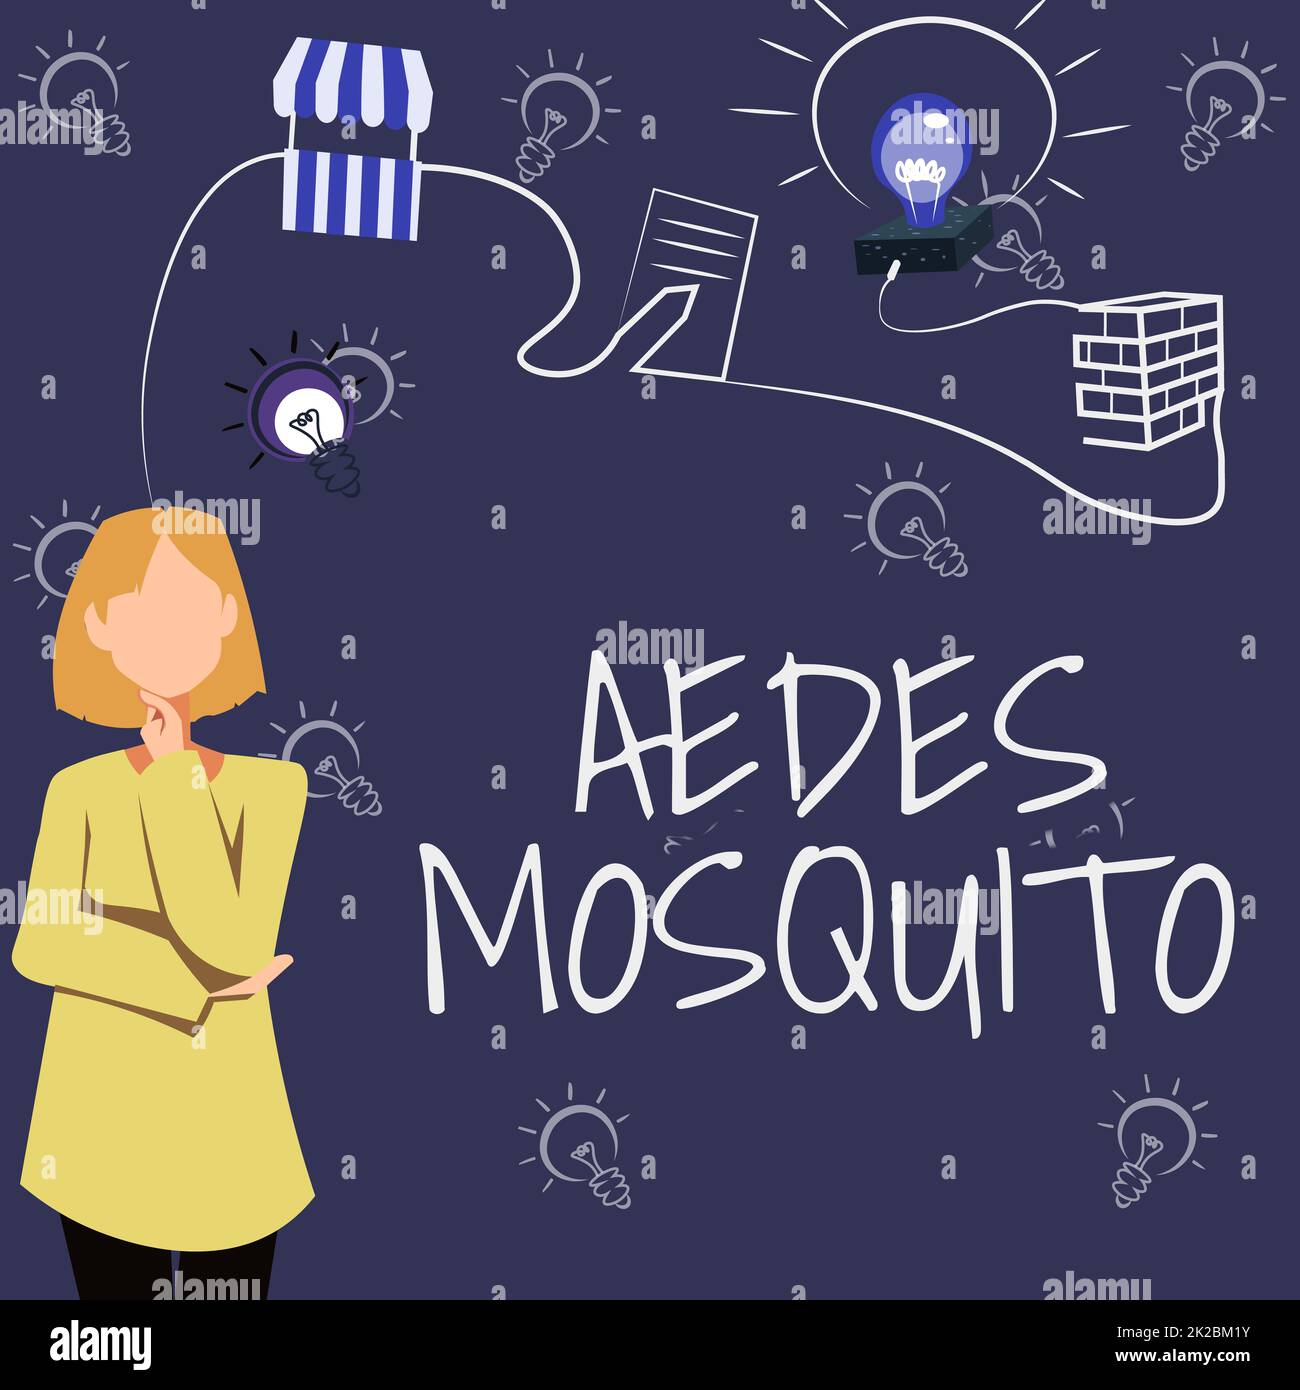 Handgeschriebenes Schild Aedes Moskitos. Geschäftskonzept die Gelbfieber-Mücke, die Dengue-Fieber verbreiten kann Frau innovatives Denken führende Ideen für eine stabile Zukunft. Stockfoto